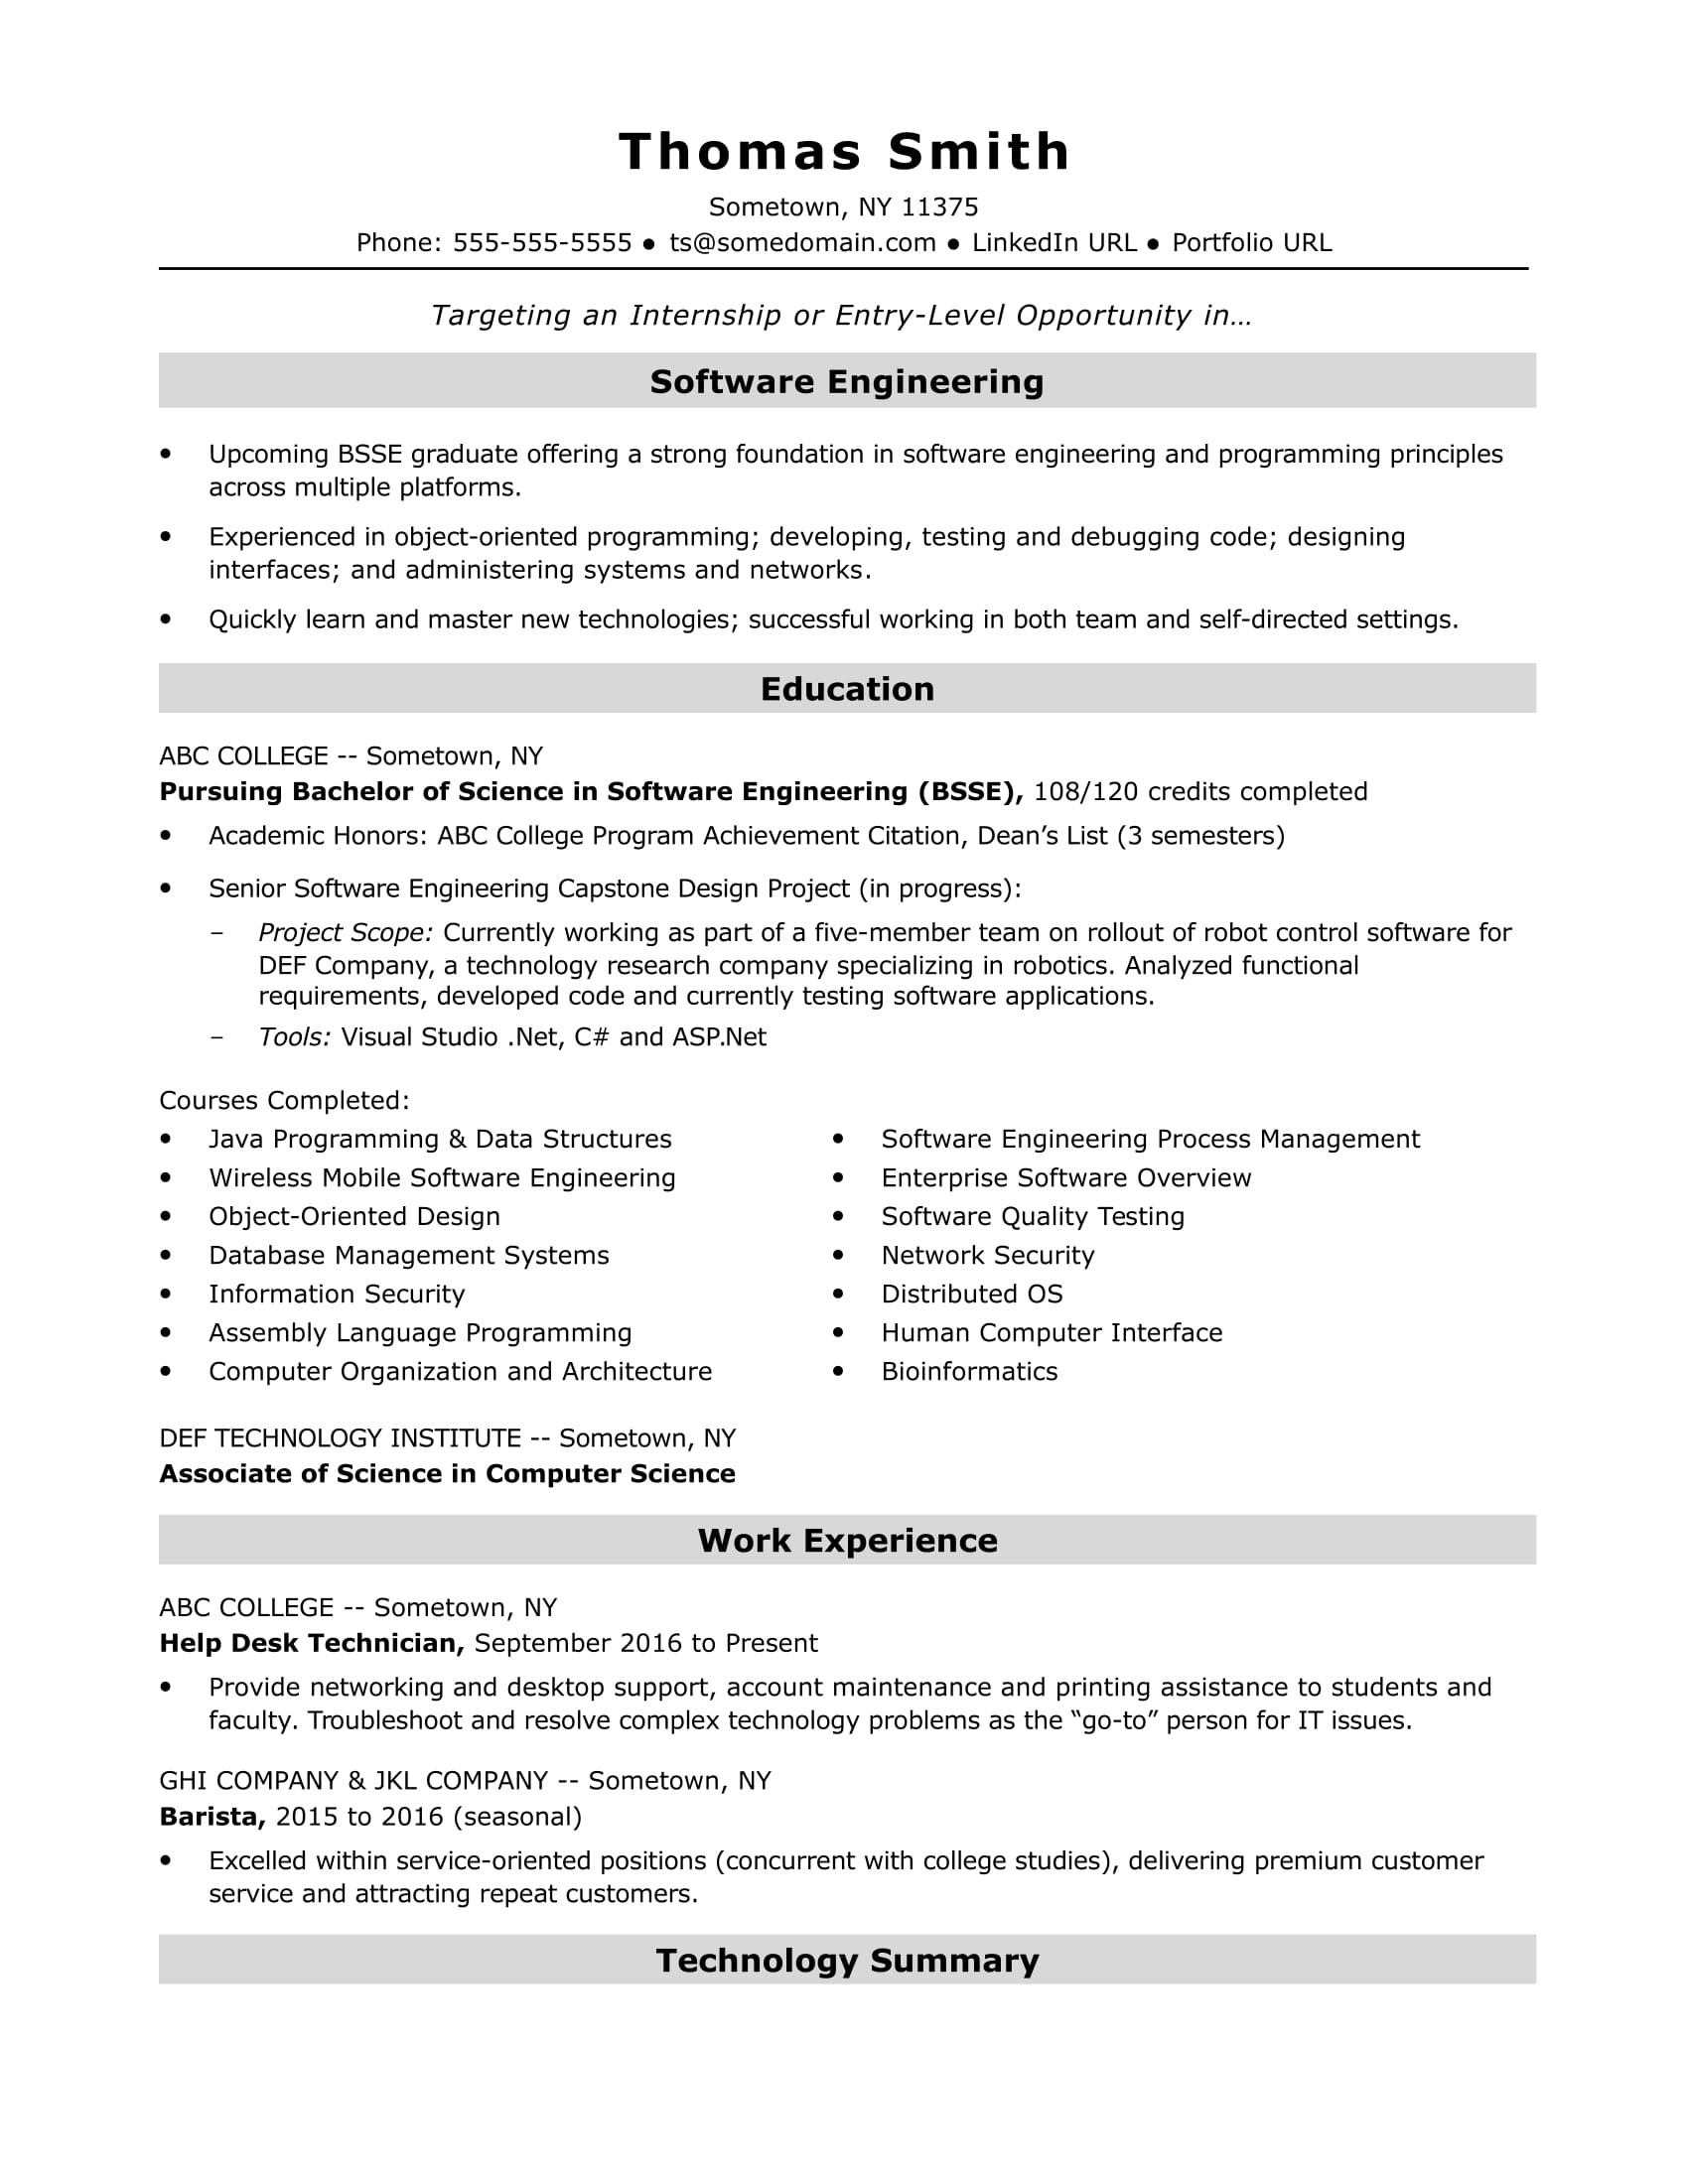 Sample Resume for Internship for Freshers Entry-level software Engineer Resume Sample Monster.com